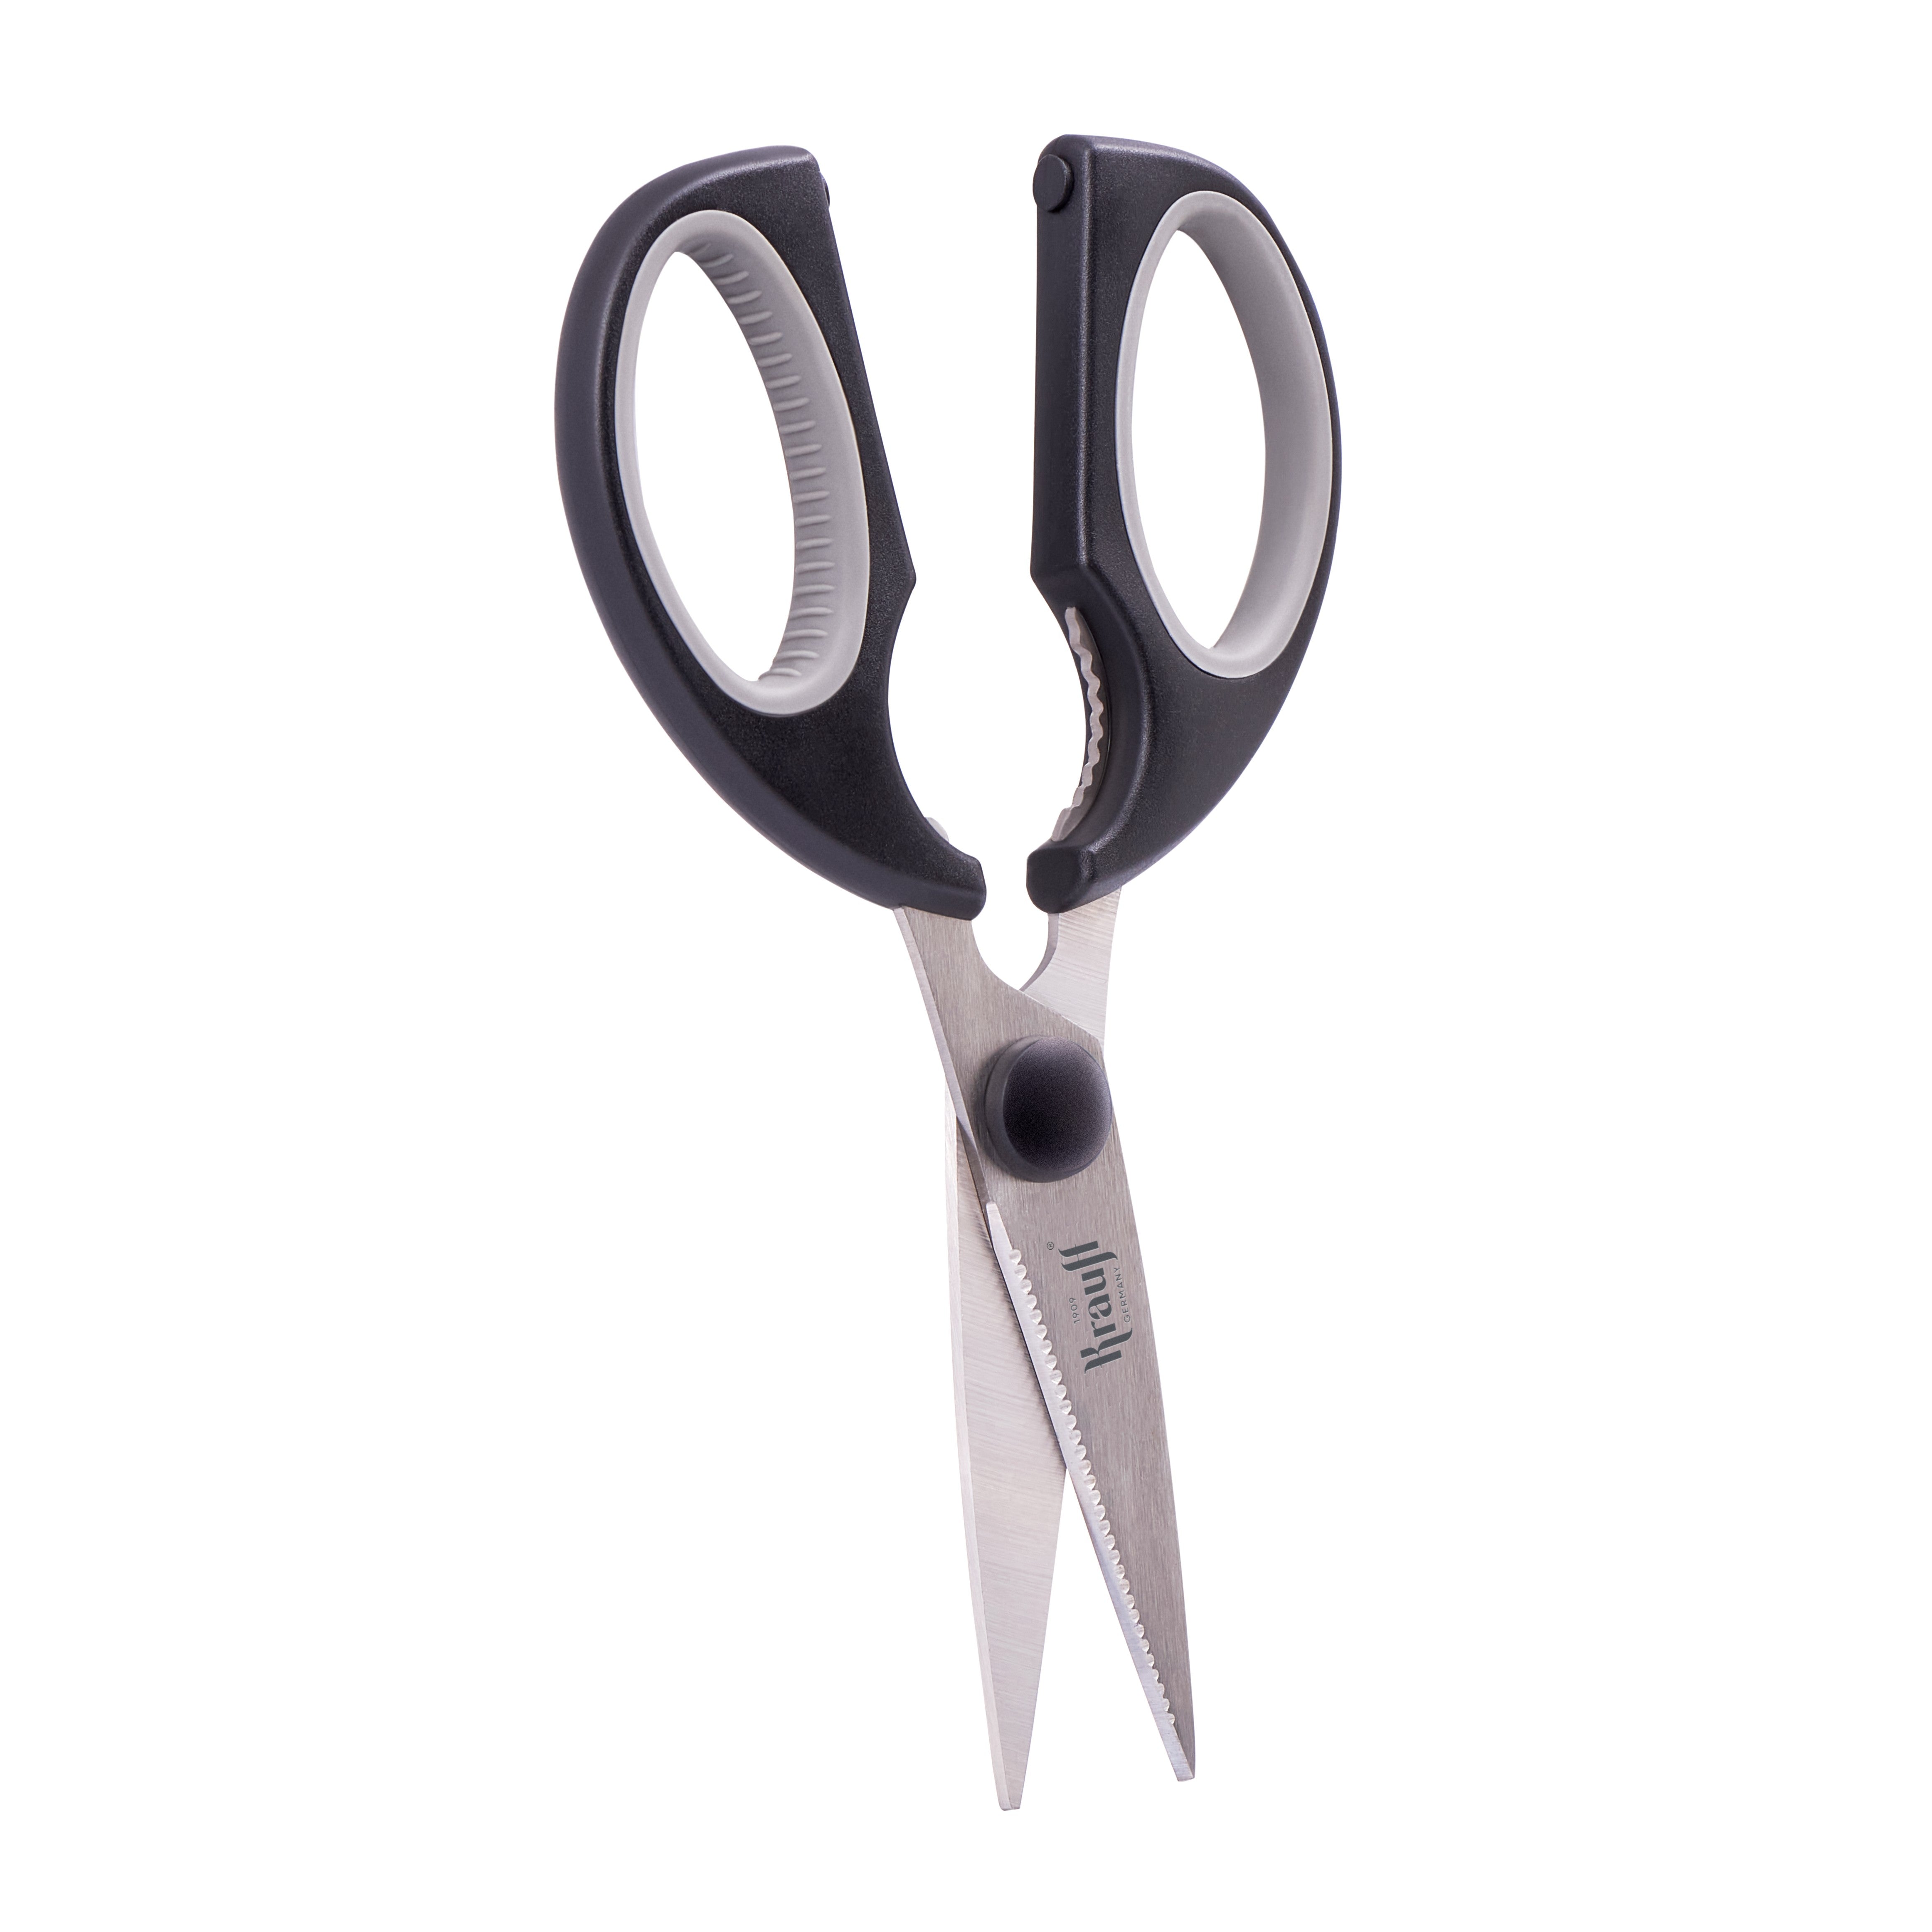 Smart Shef kitchen scissors